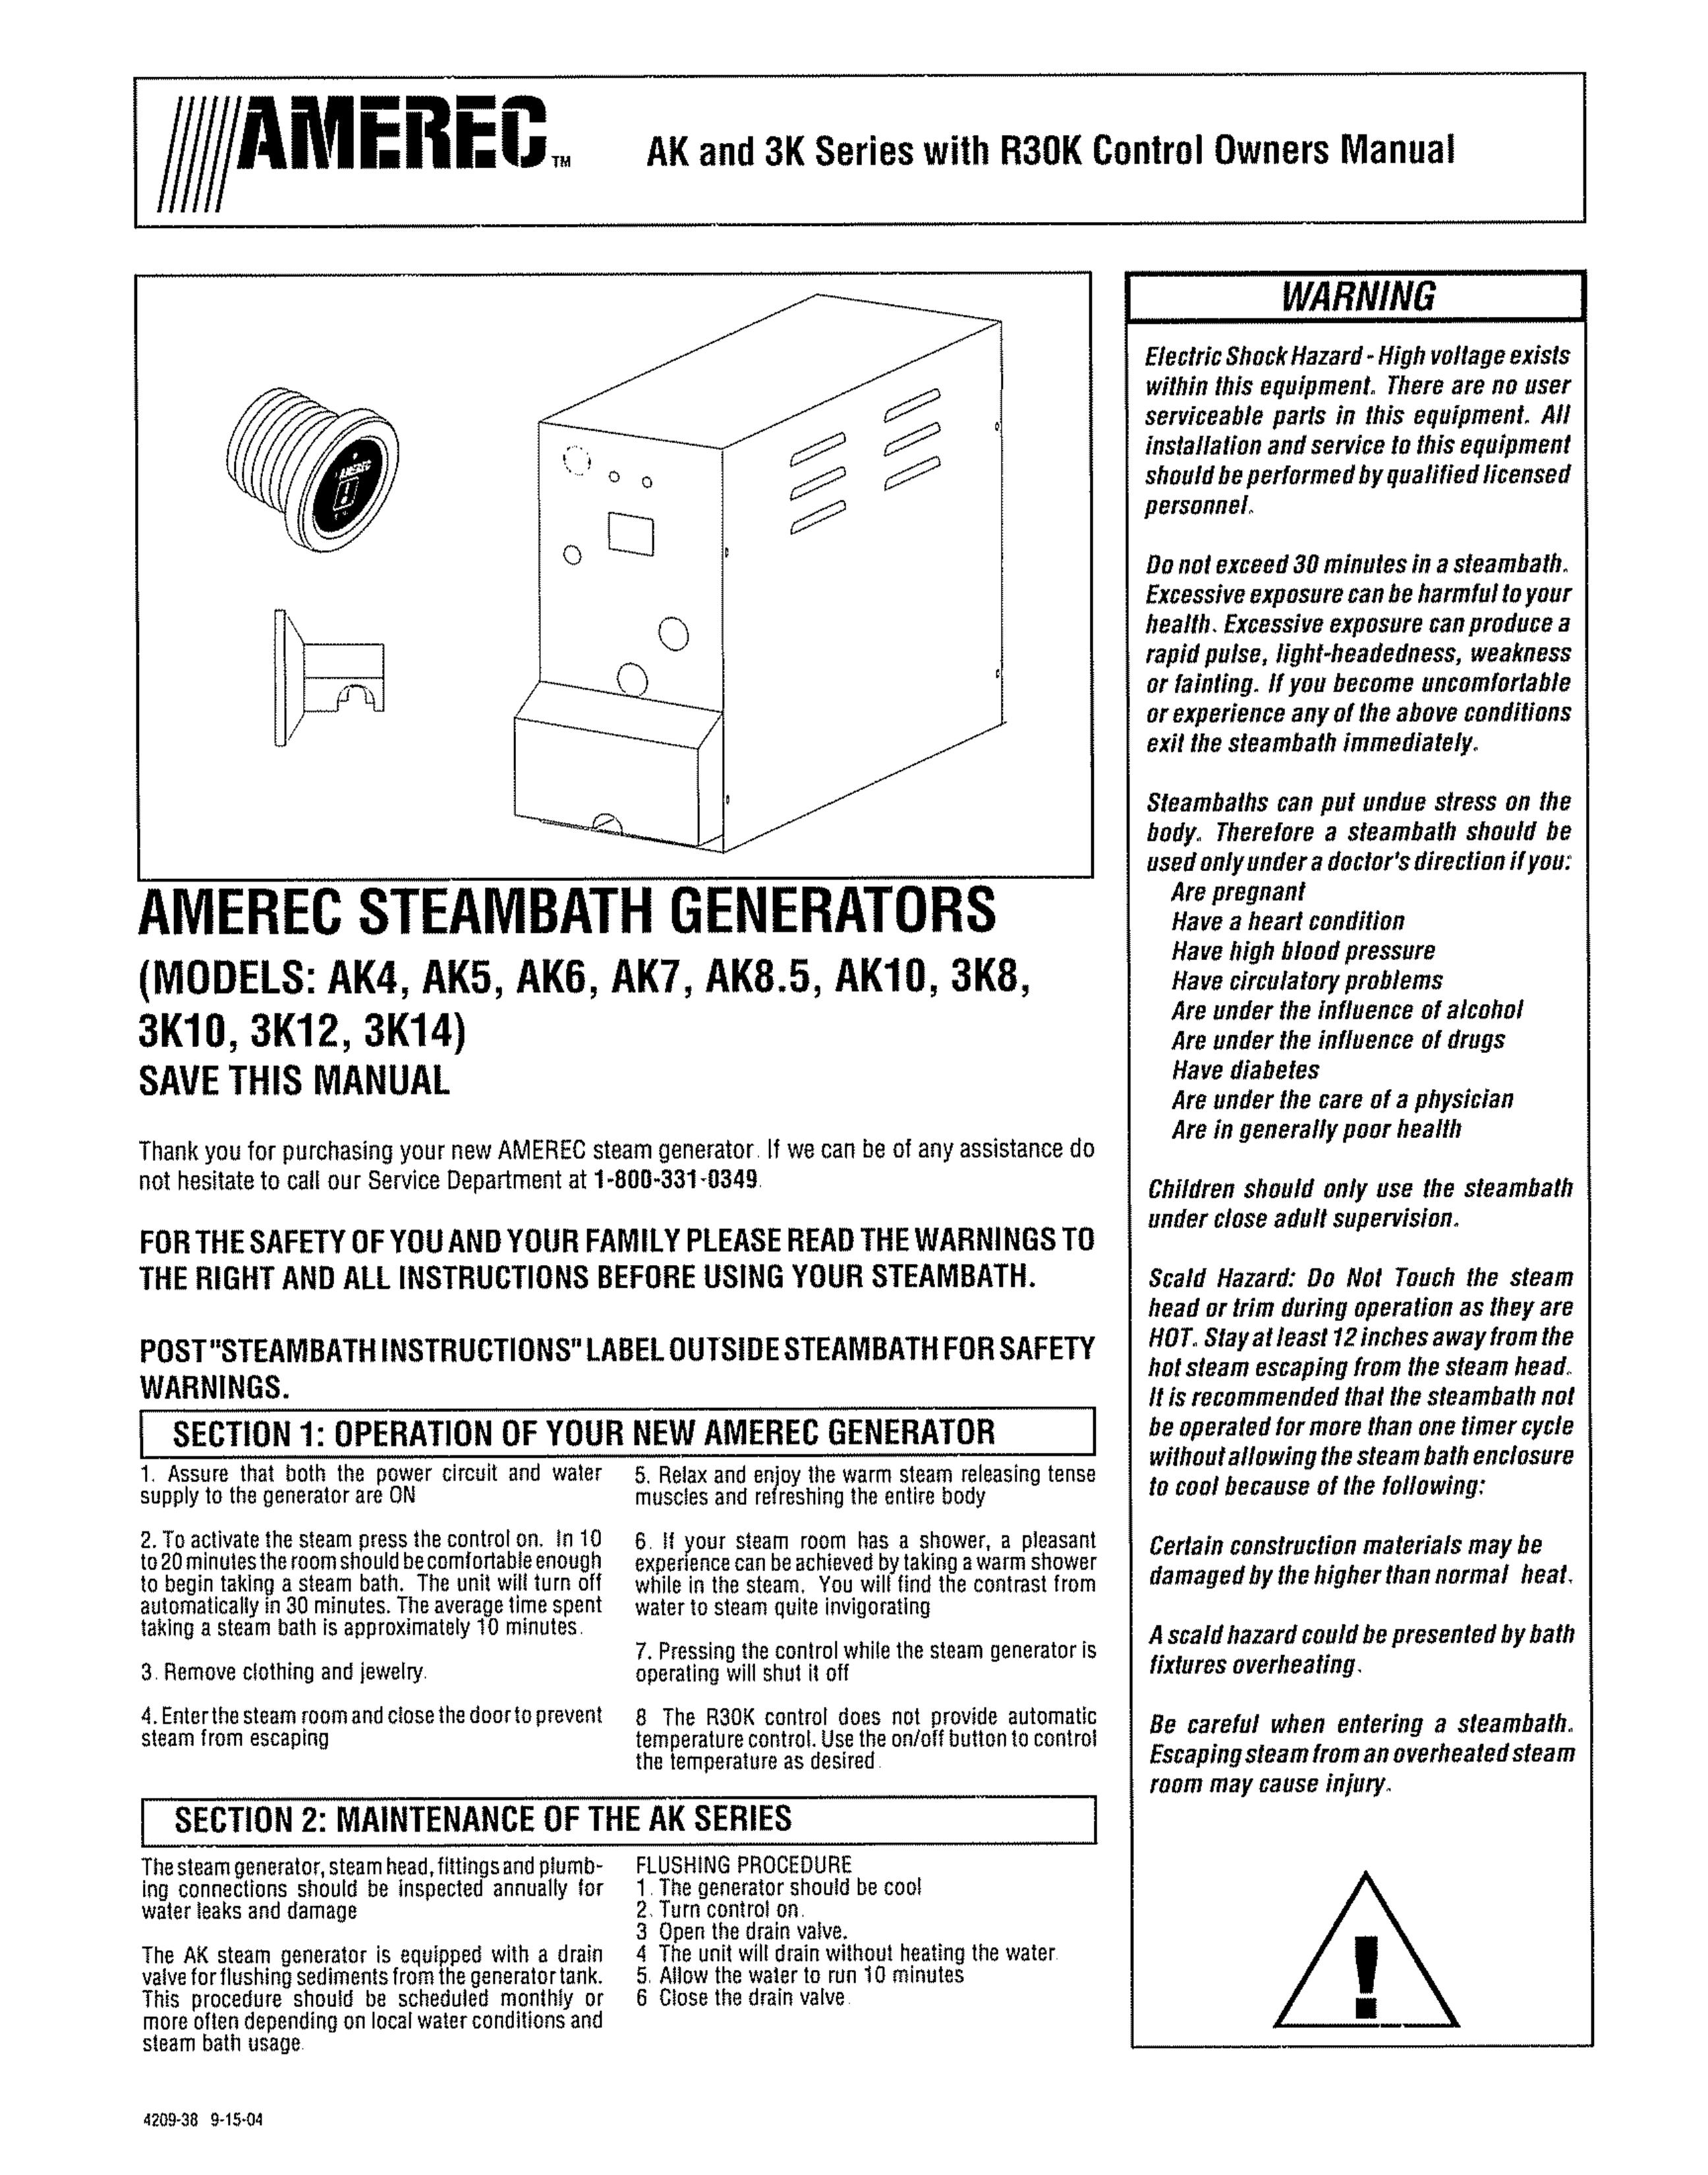 Amerec AK5 Portable Generator User Manual